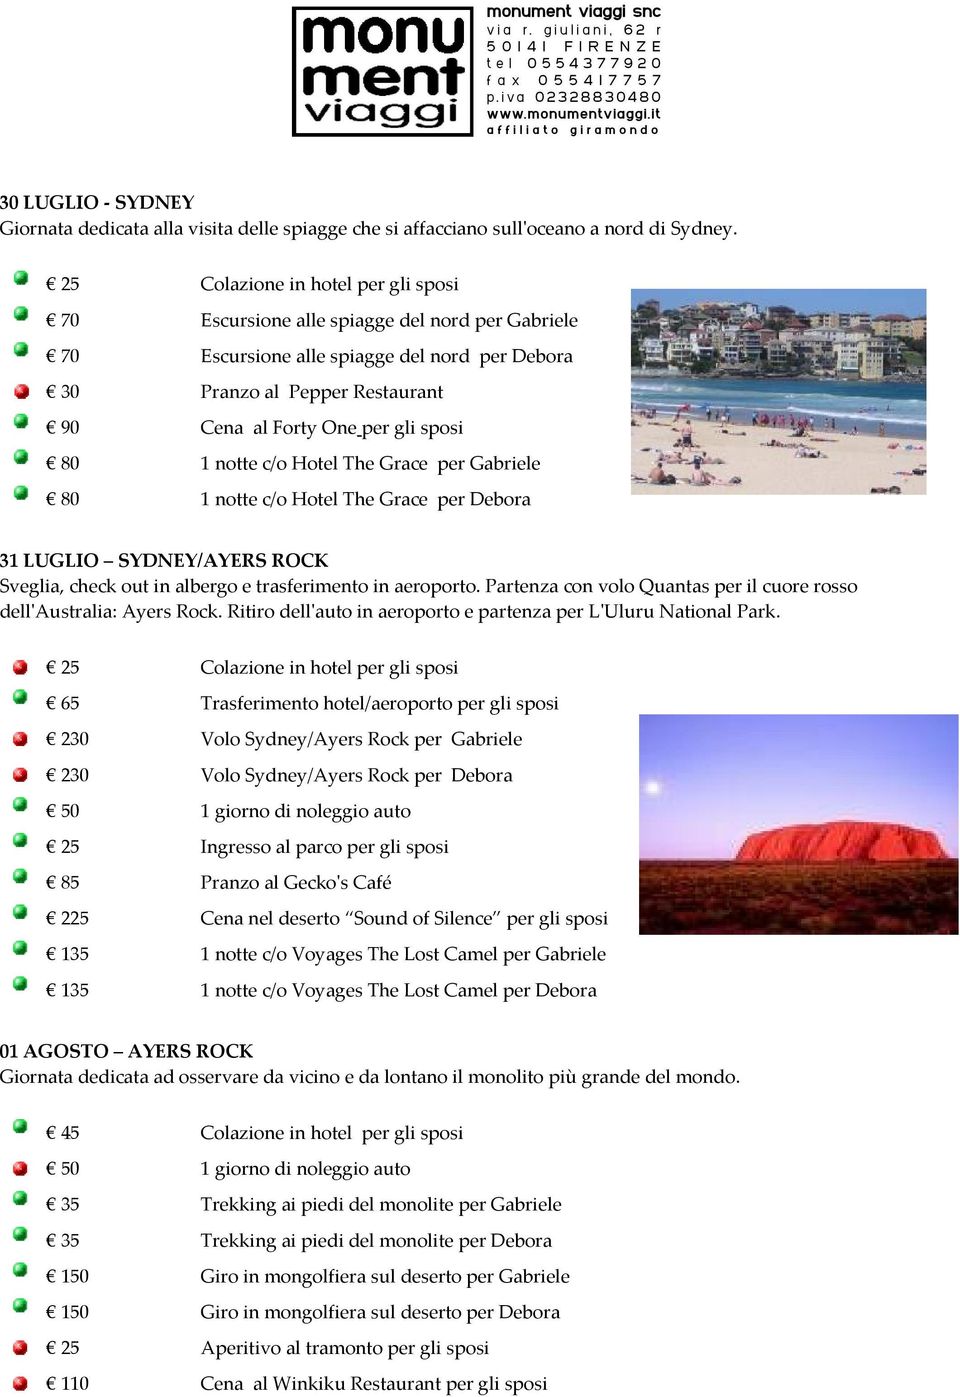 check out in albergo e trasferimento in aeroporto. Partenza con volo Quantas per il cuore rosso dell'australia: Ayers Rock. Ritiro dell'auto in aeroporto e partenza per L'Uluru National Park.